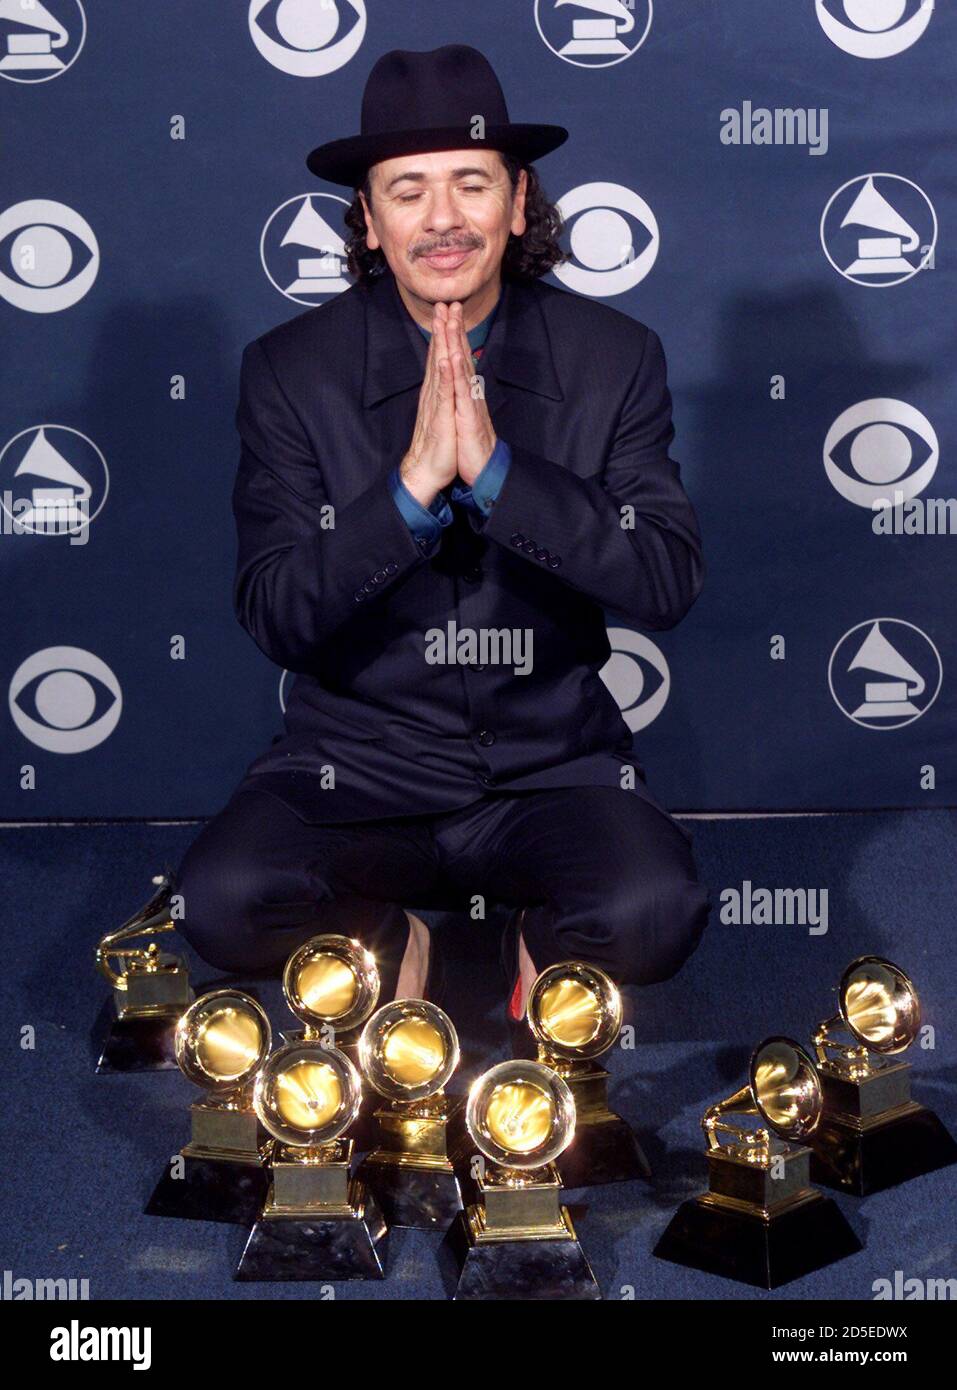 Sänger Carlos Santana posiert mit seinen acht Grammy Awards, die er im  Februar 23 bei den 42. Grammy Awards in Los Angeles gewann. Santana gewann  acht Grammy Awards, darunter Record of the